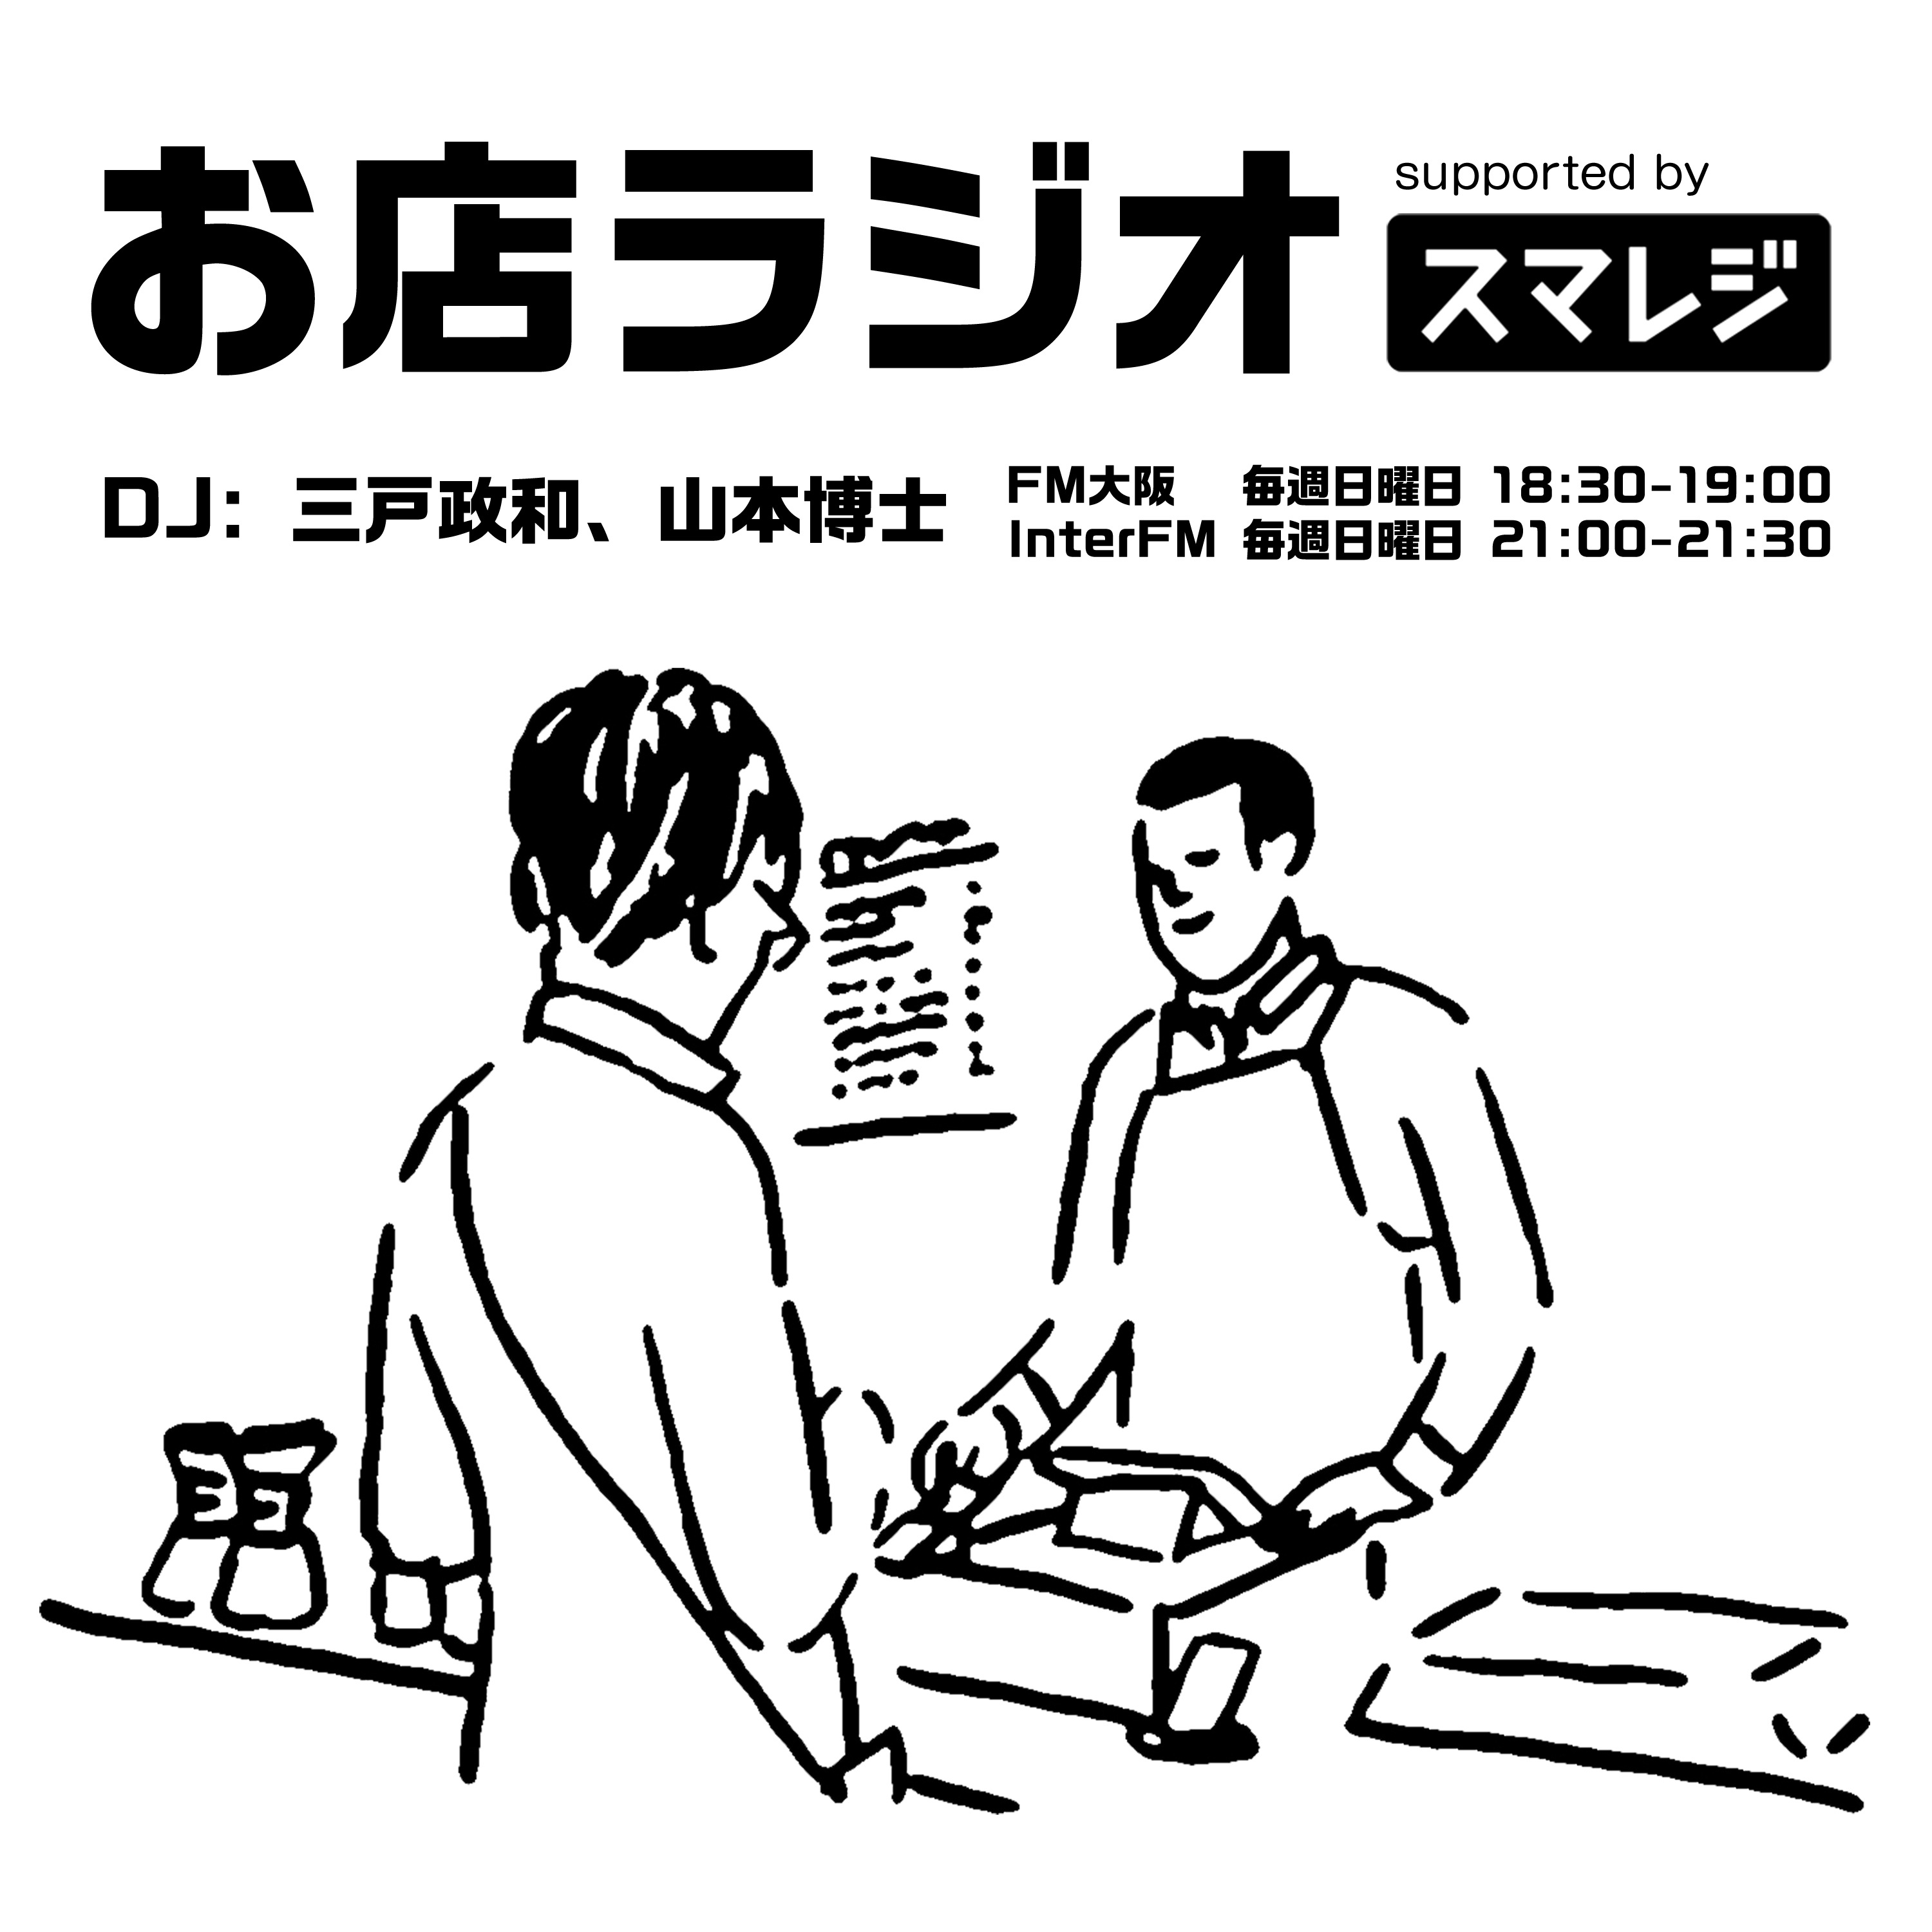 お店ラジオ supported by スマレジ #30